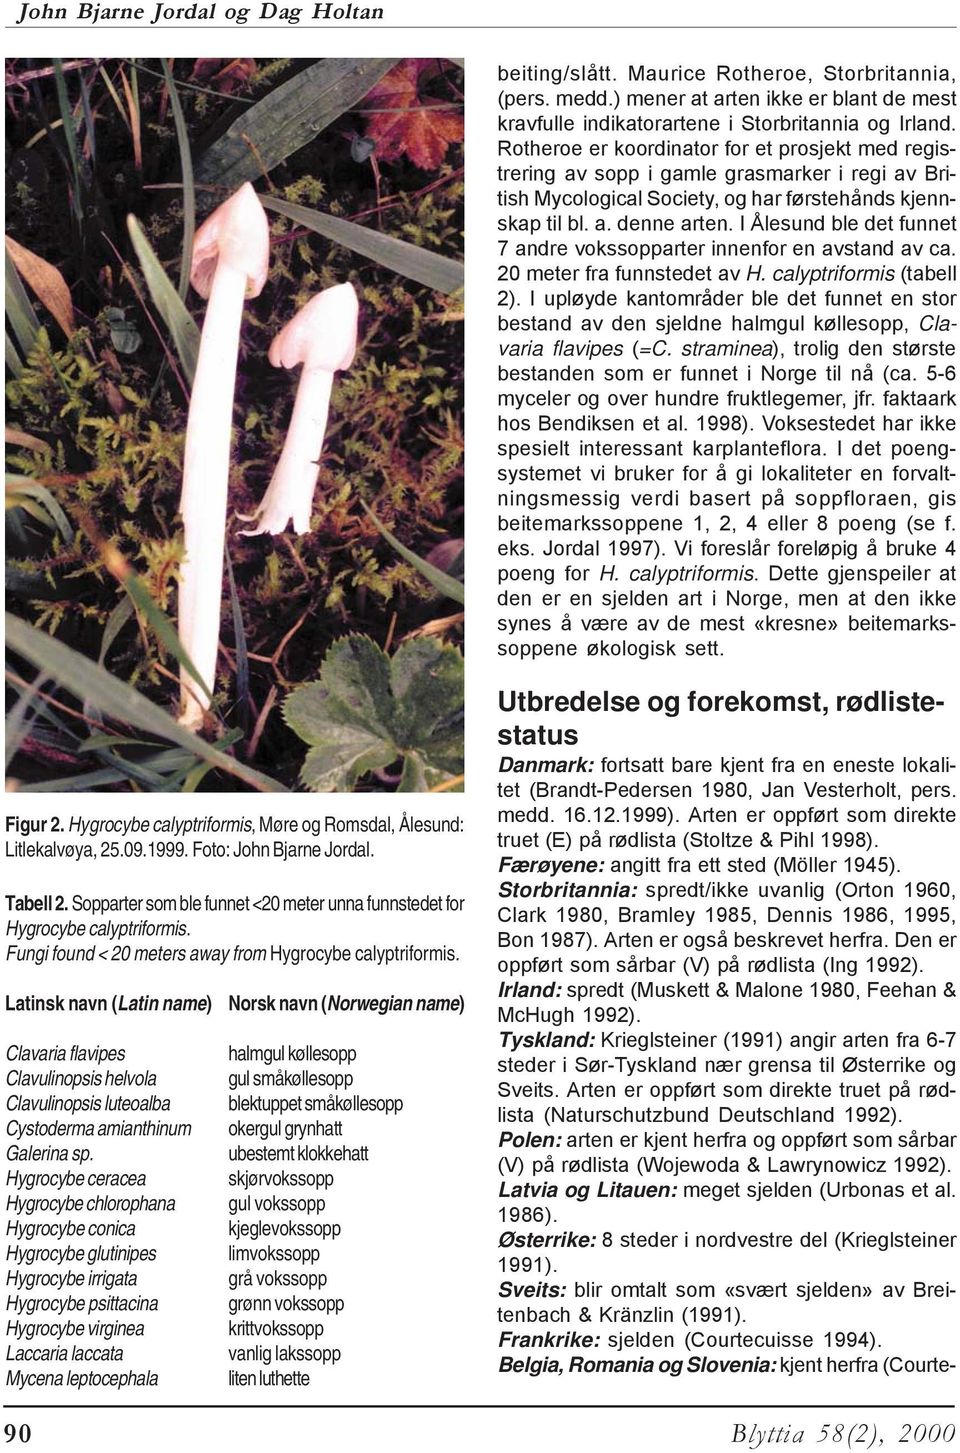 I Ålesund ble det funnet 7 andre vokssopparter innenfor en avstand av ca. 20 meter fra funnstedet av H. calyptriformis (tabell 2).